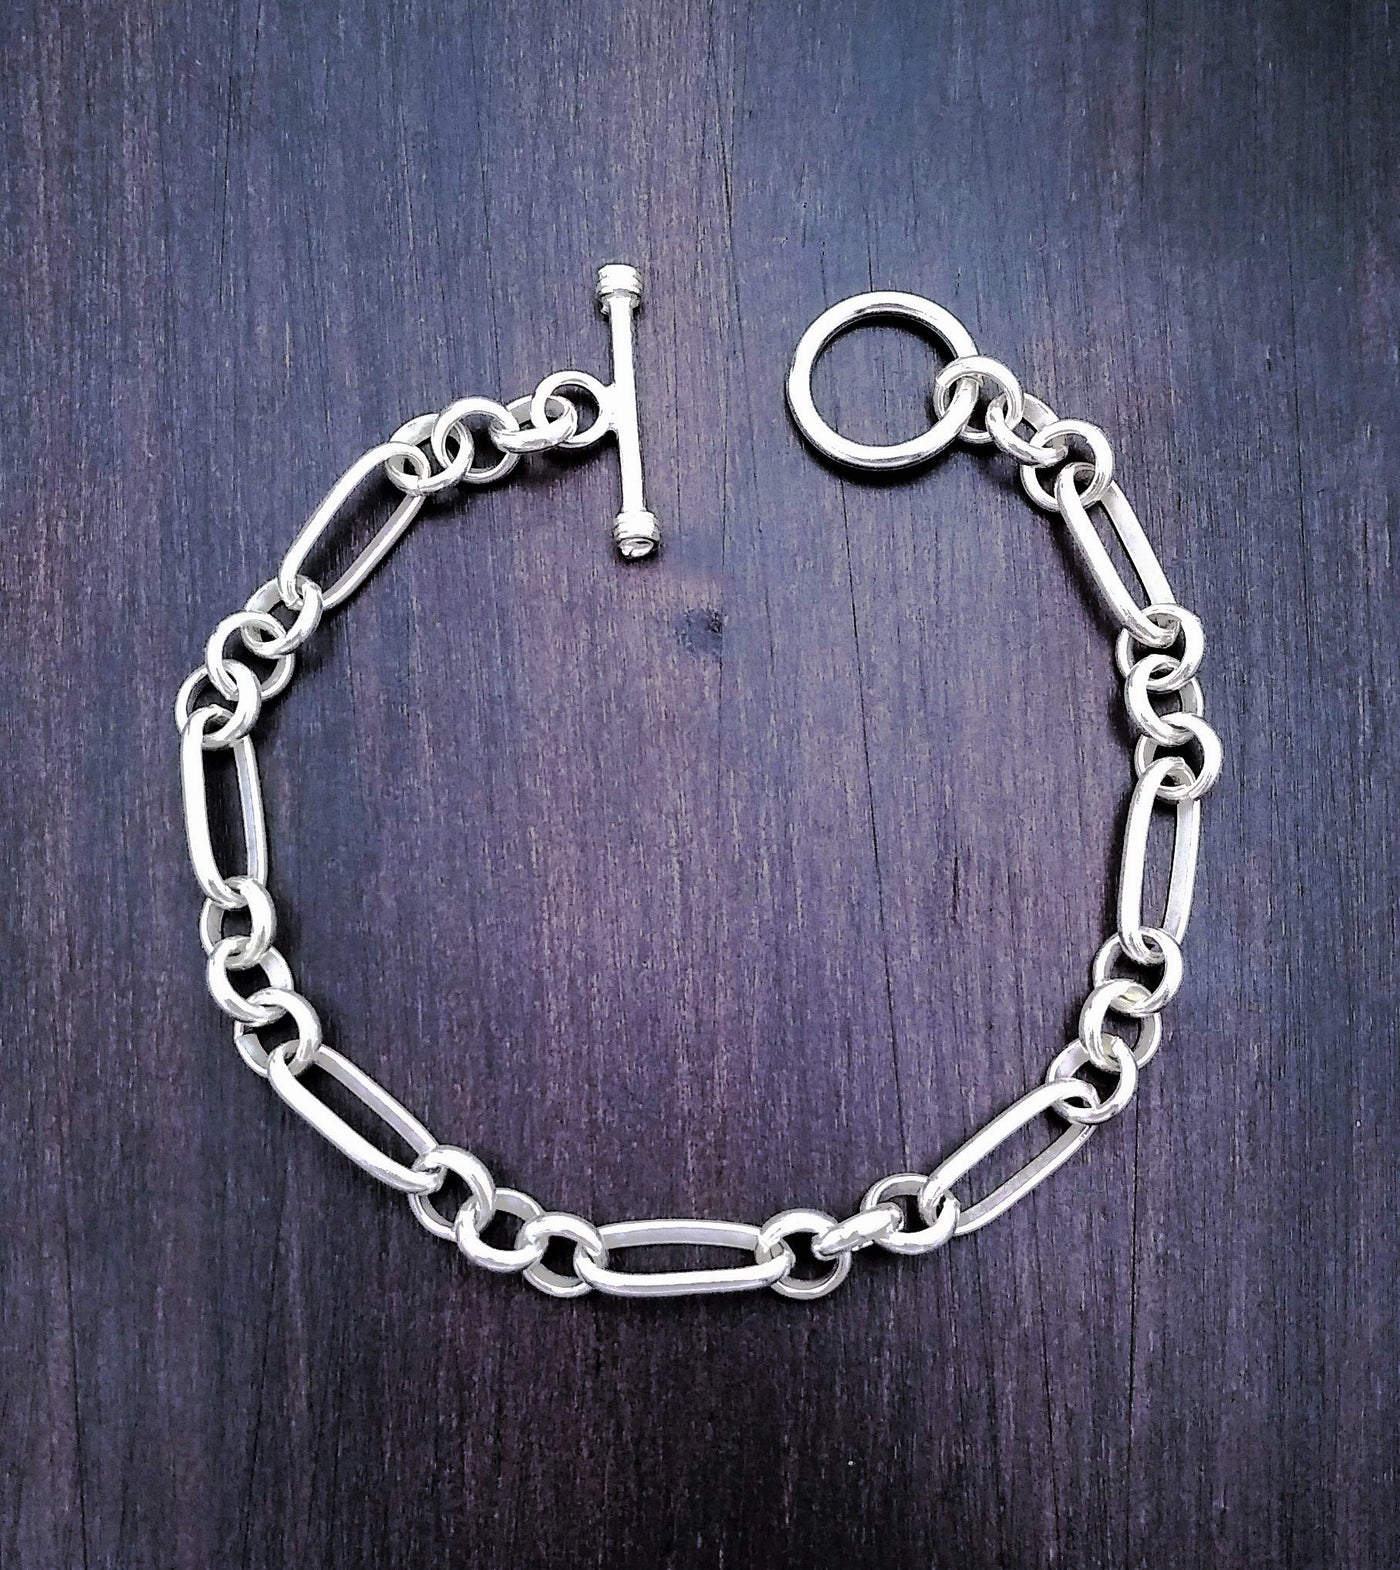 Via Taxco Handmade Link Bracelet